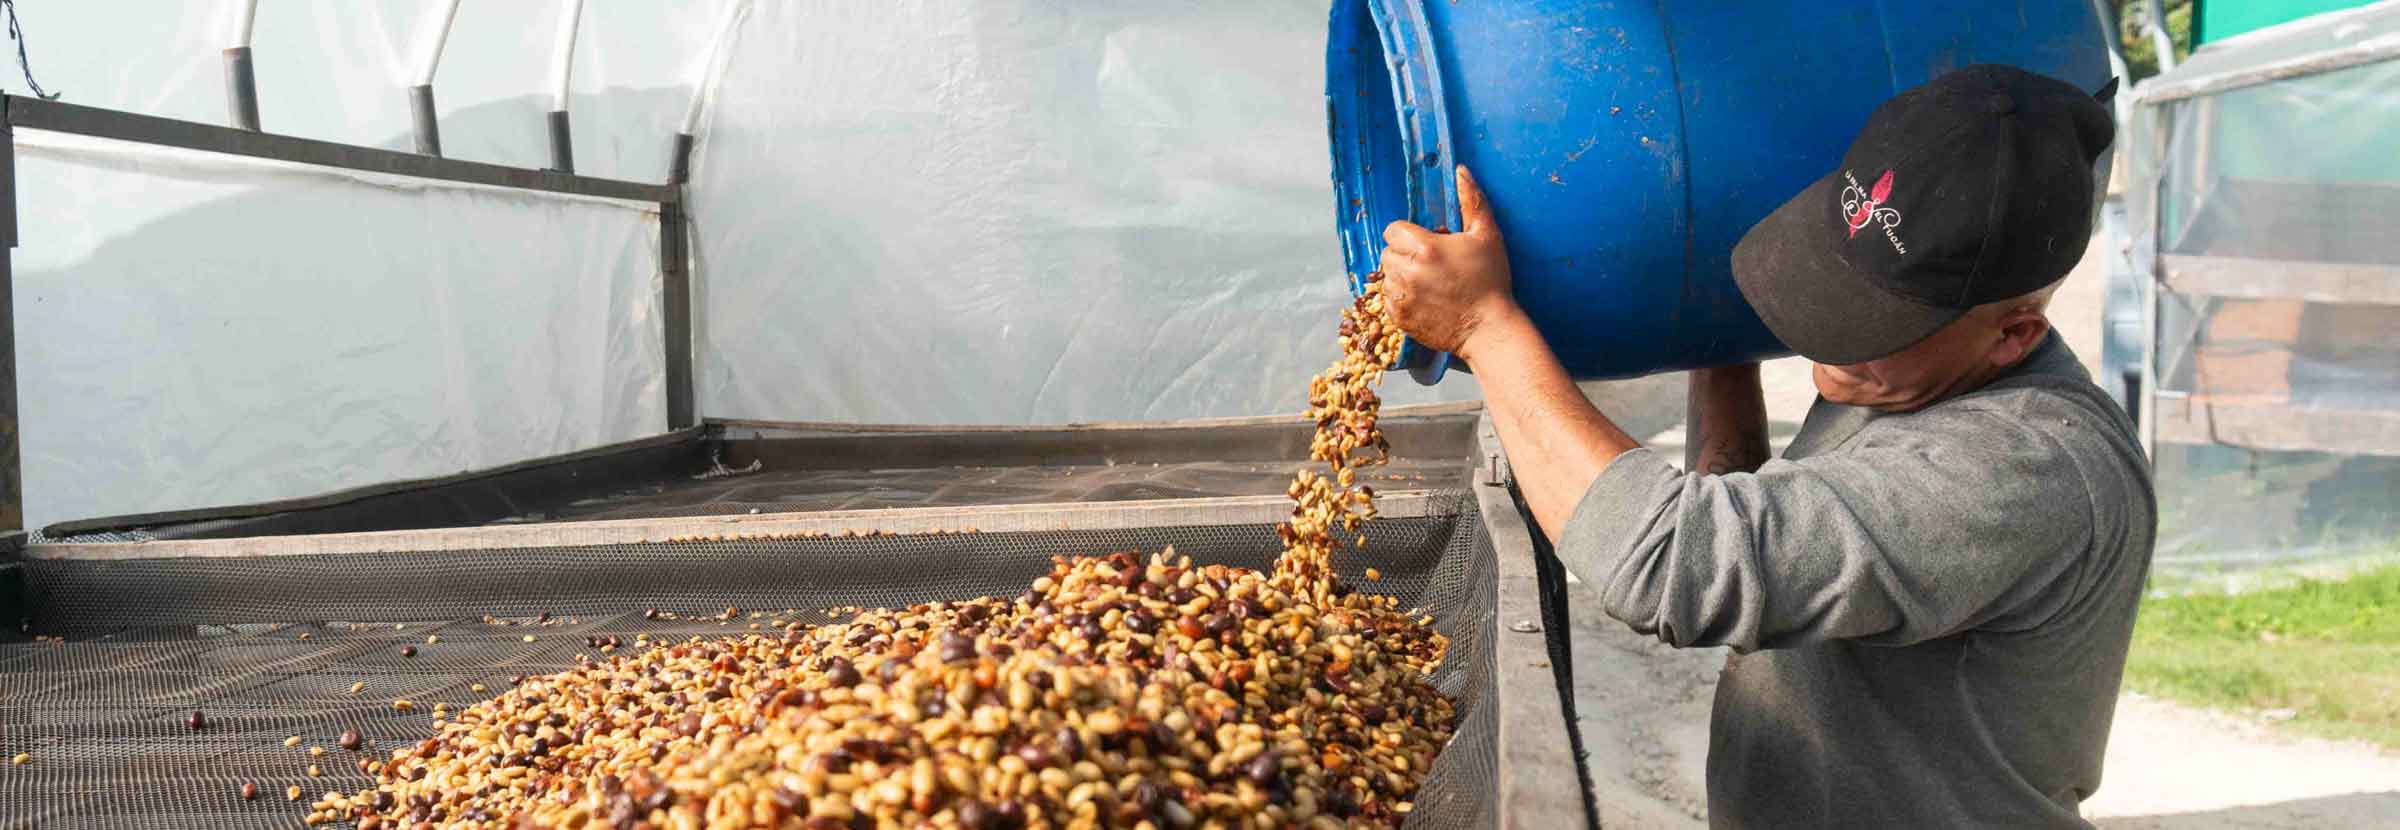 Produtor levando um lote de café de fermentação lática para secar em terreiro suspenso